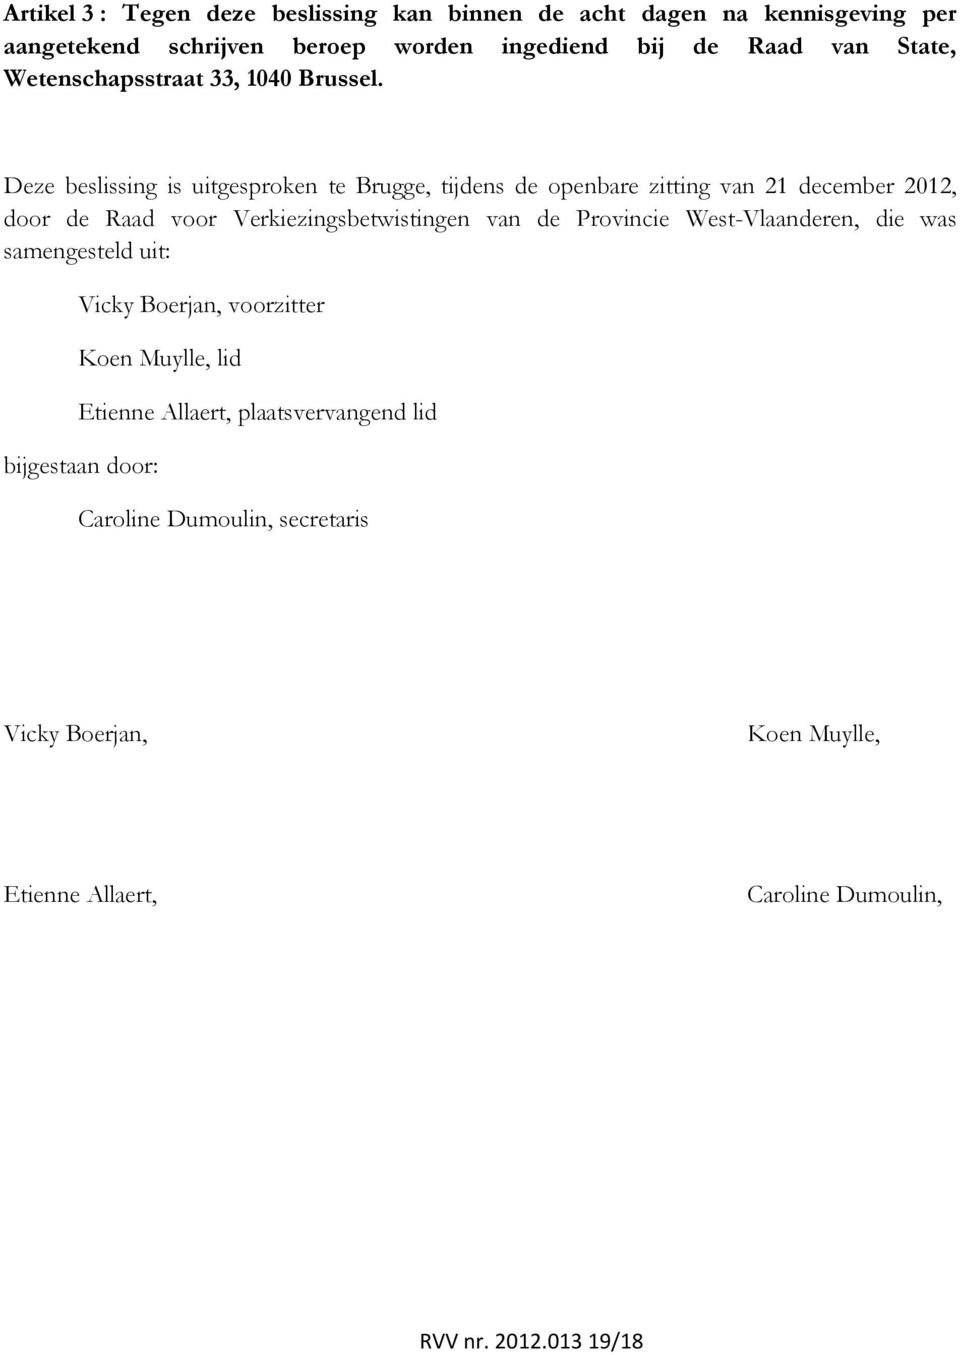 Deze beslissing is uitgesproken te Brugge, tijdens de openbare zitting van 21 december 2012, door de Raad voor Verkiezingsbetwistingen van de